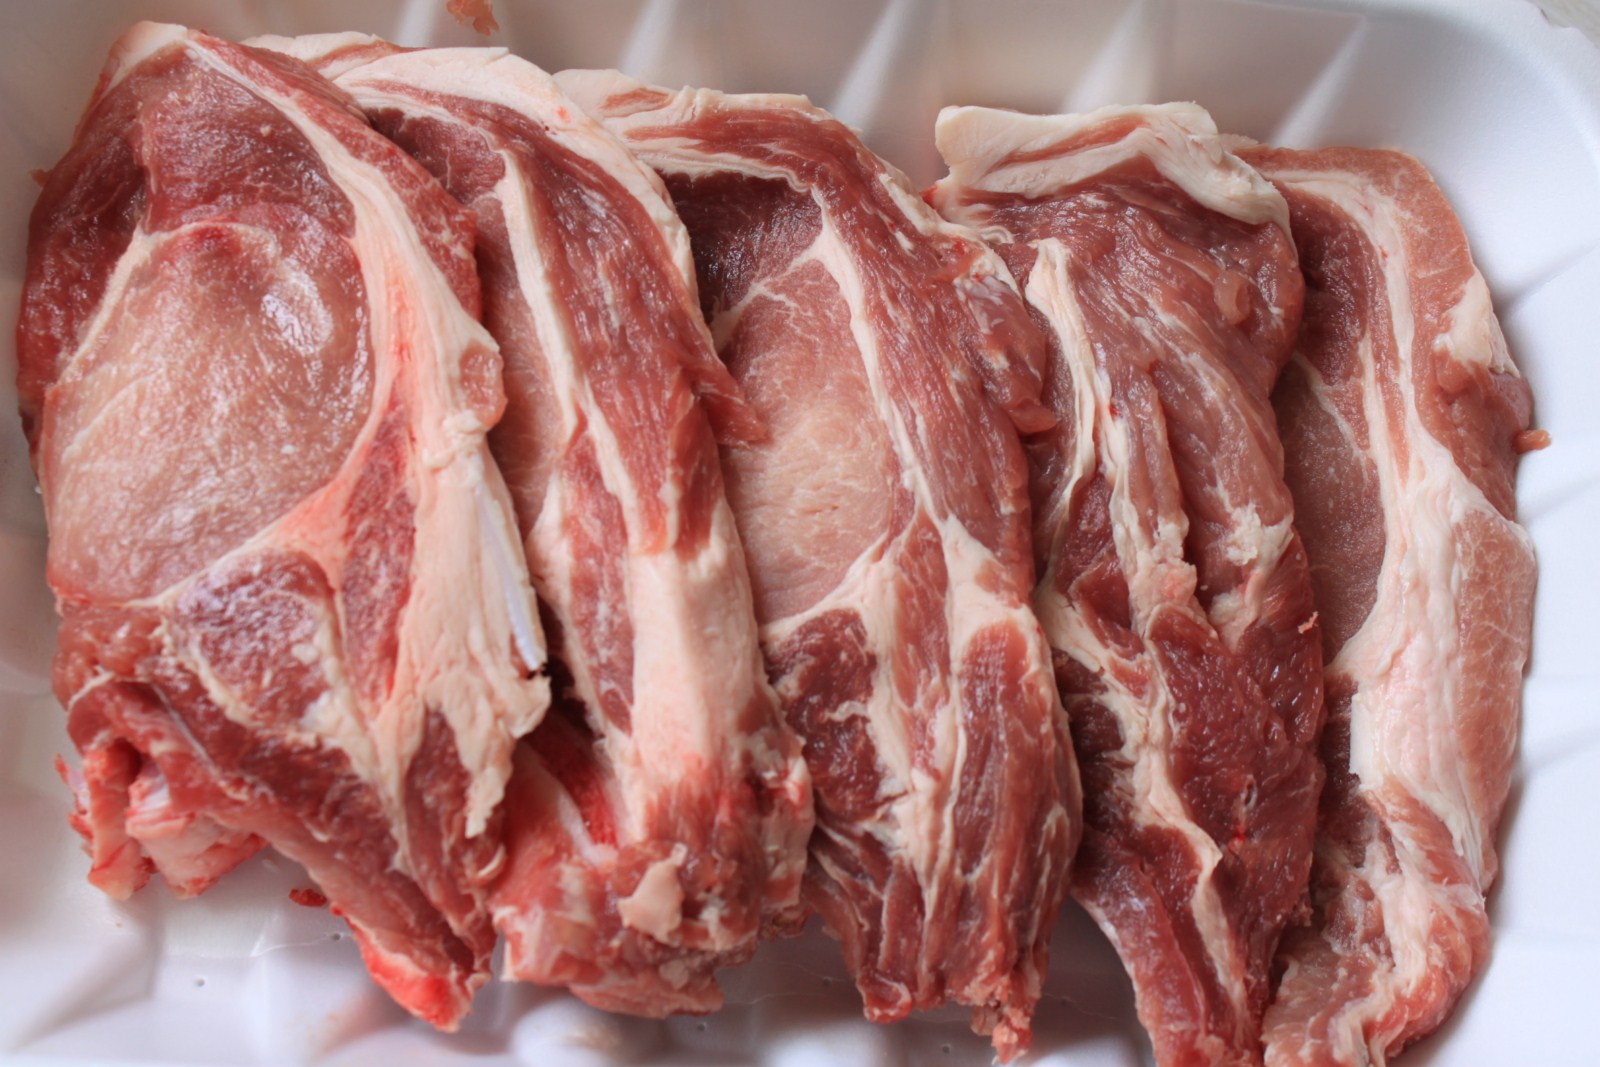   Thịt lợn nếu chưa được nấu chính kỹ có thể khiến con người bị nhiễm sán  